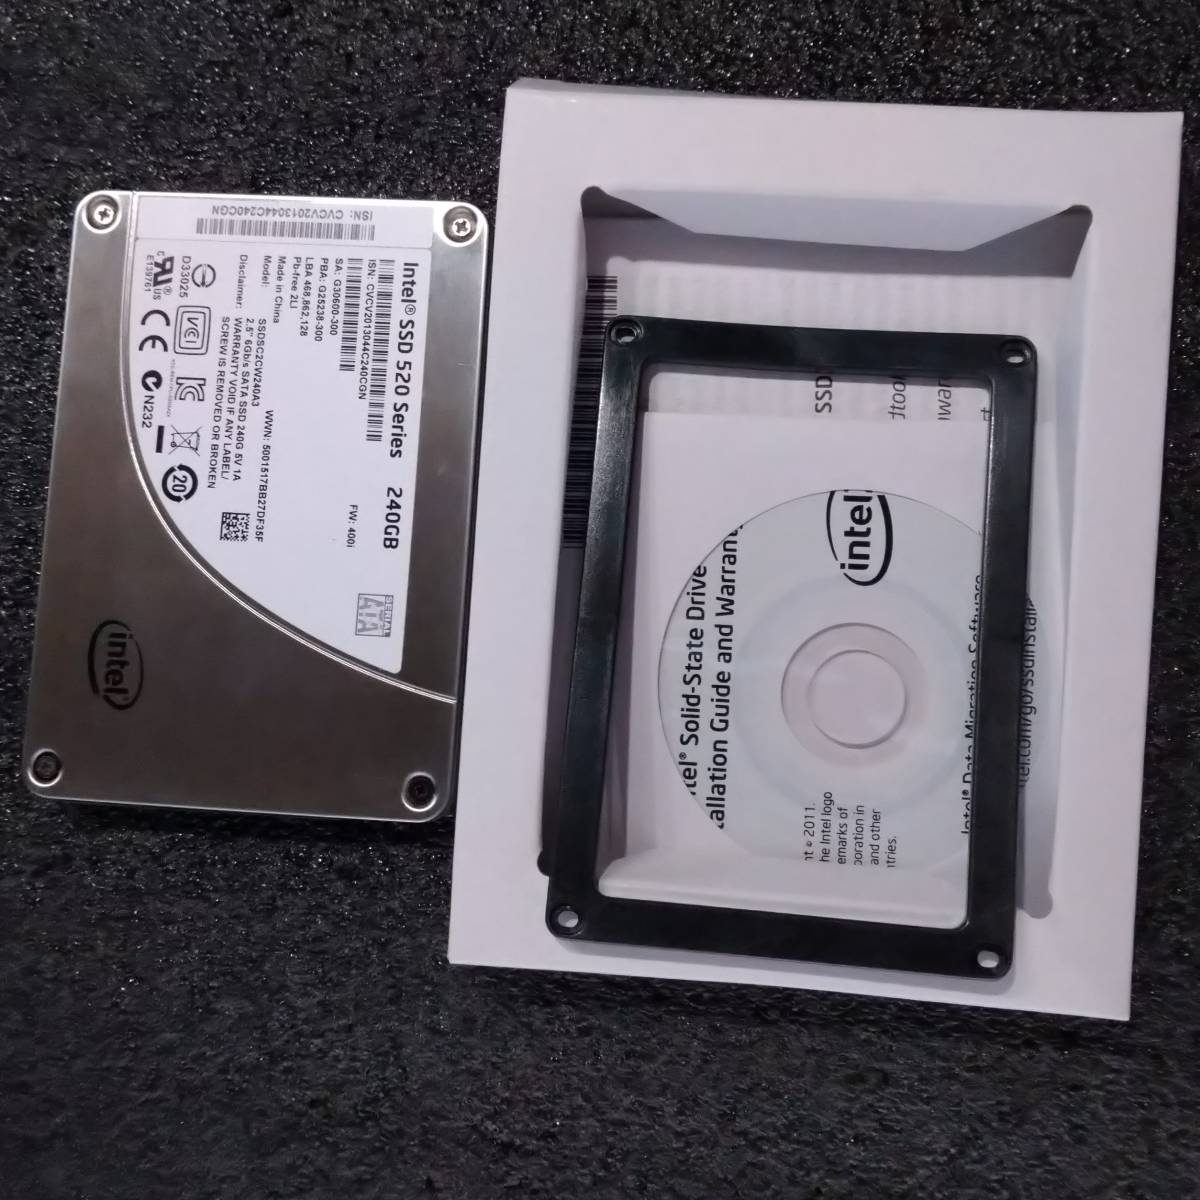 【中古】Intel SSD 520 Series 240GB SSDSC2CW240A3 [2.5インチ SATA SSD 7mm厚 MLC]